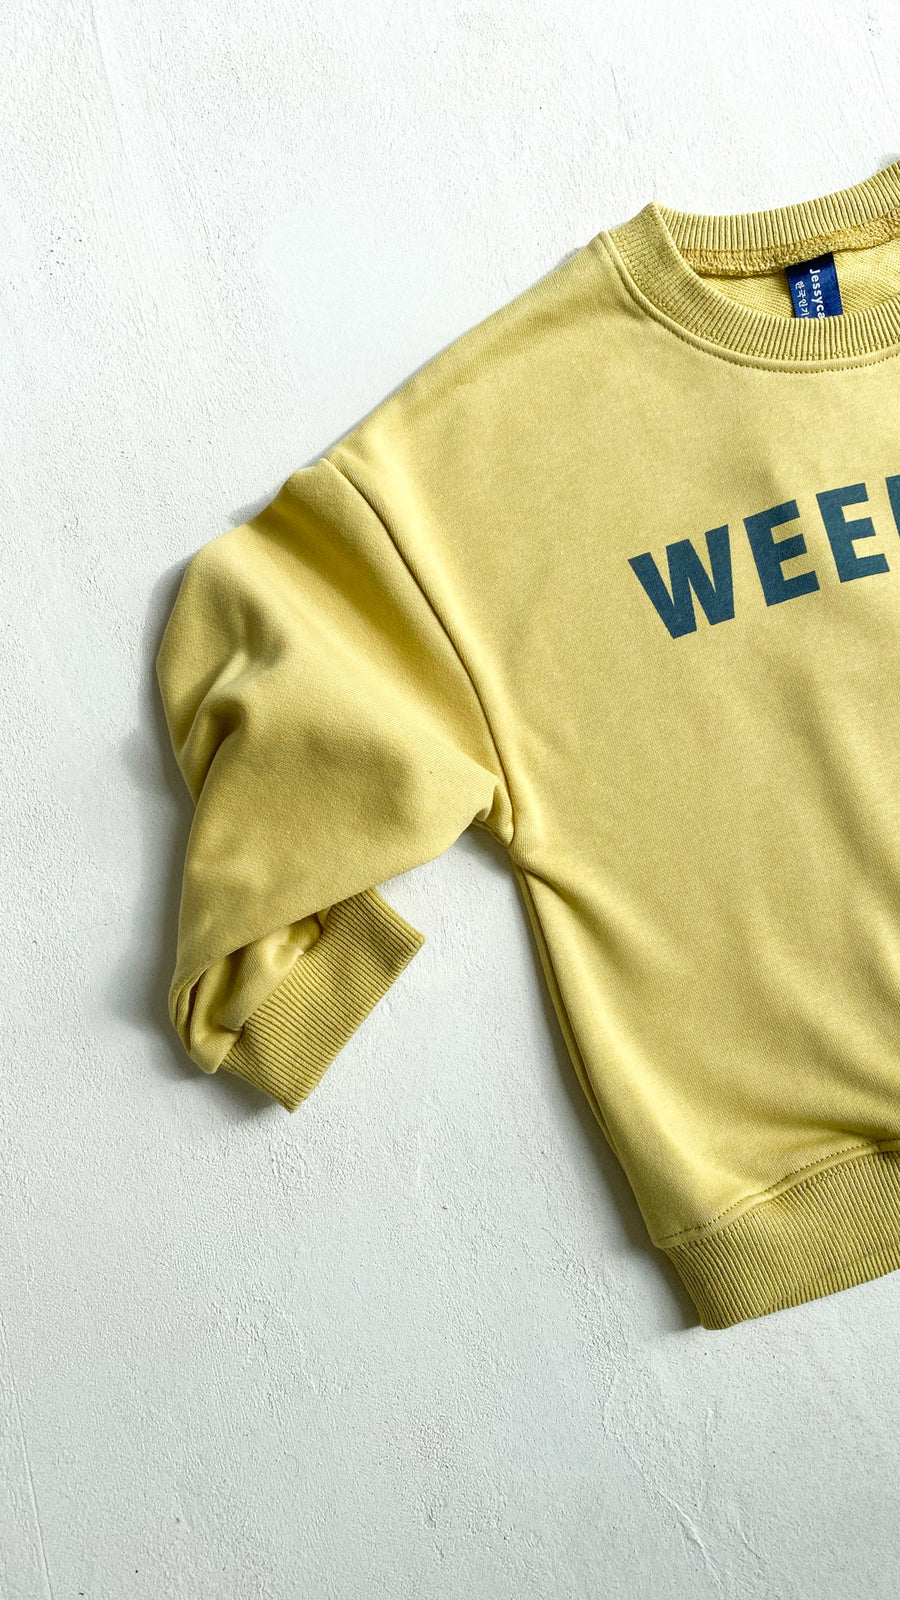 Weekend sweater